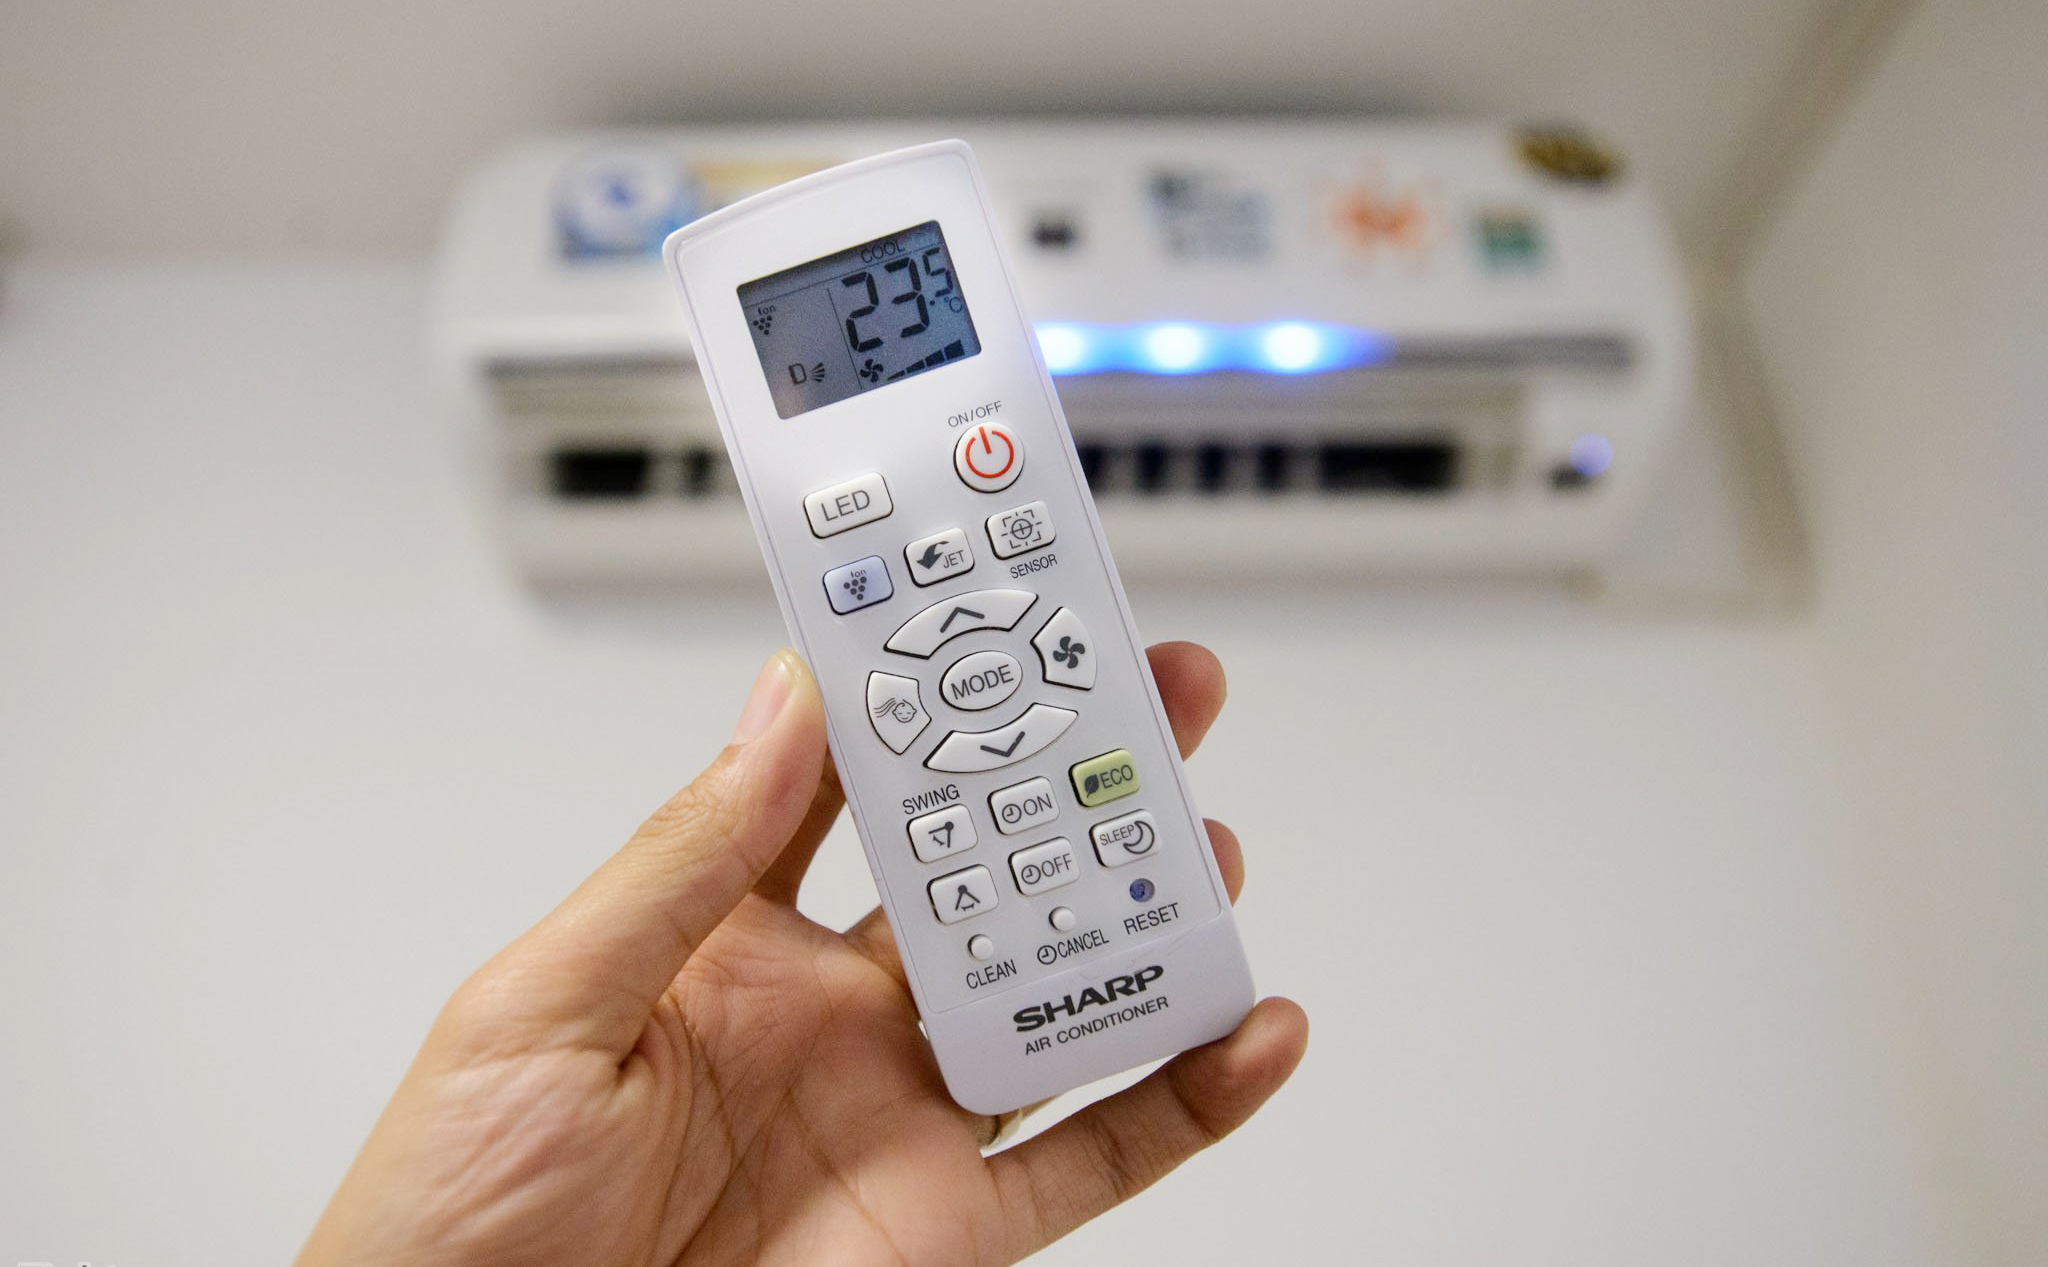 Kiểm soát nhiệt độ và độ ẩm trong phòng sẽ giúp giảm thiểu khả năng gây ốm đối với các bé khi sử dụng điều hòa